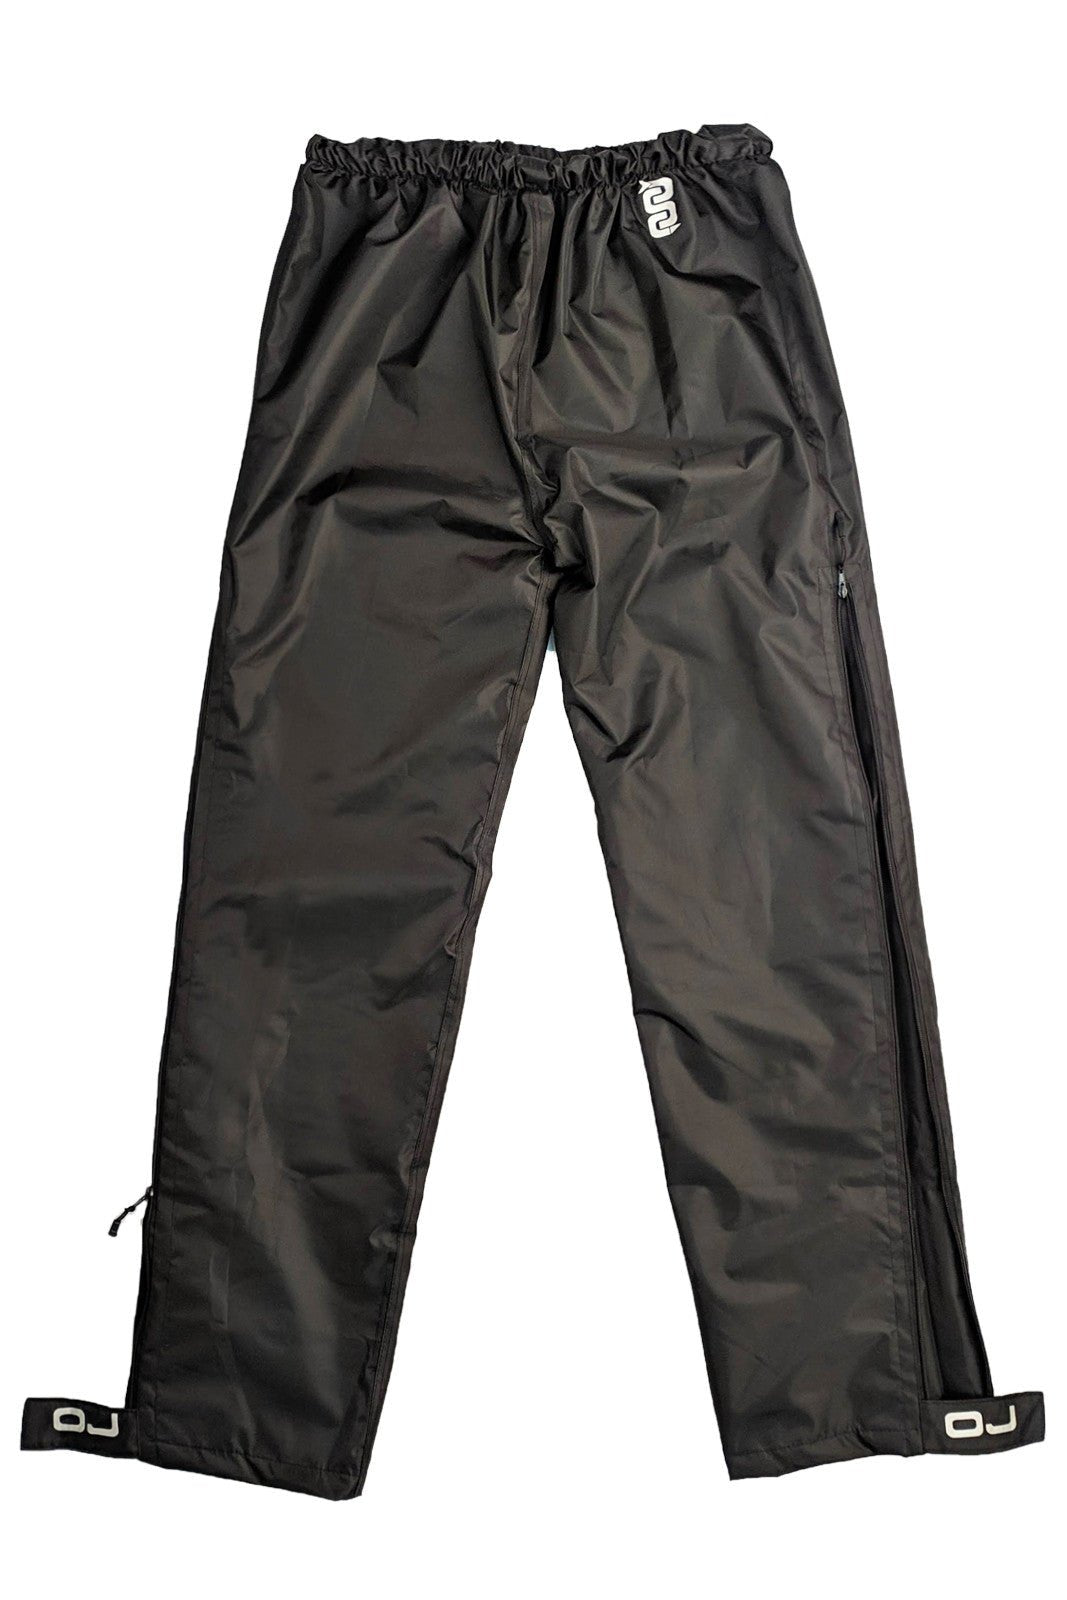 Pantalone antipioggia moto OJ ESTREMO P nero - OnTheRoad.shop - OJ